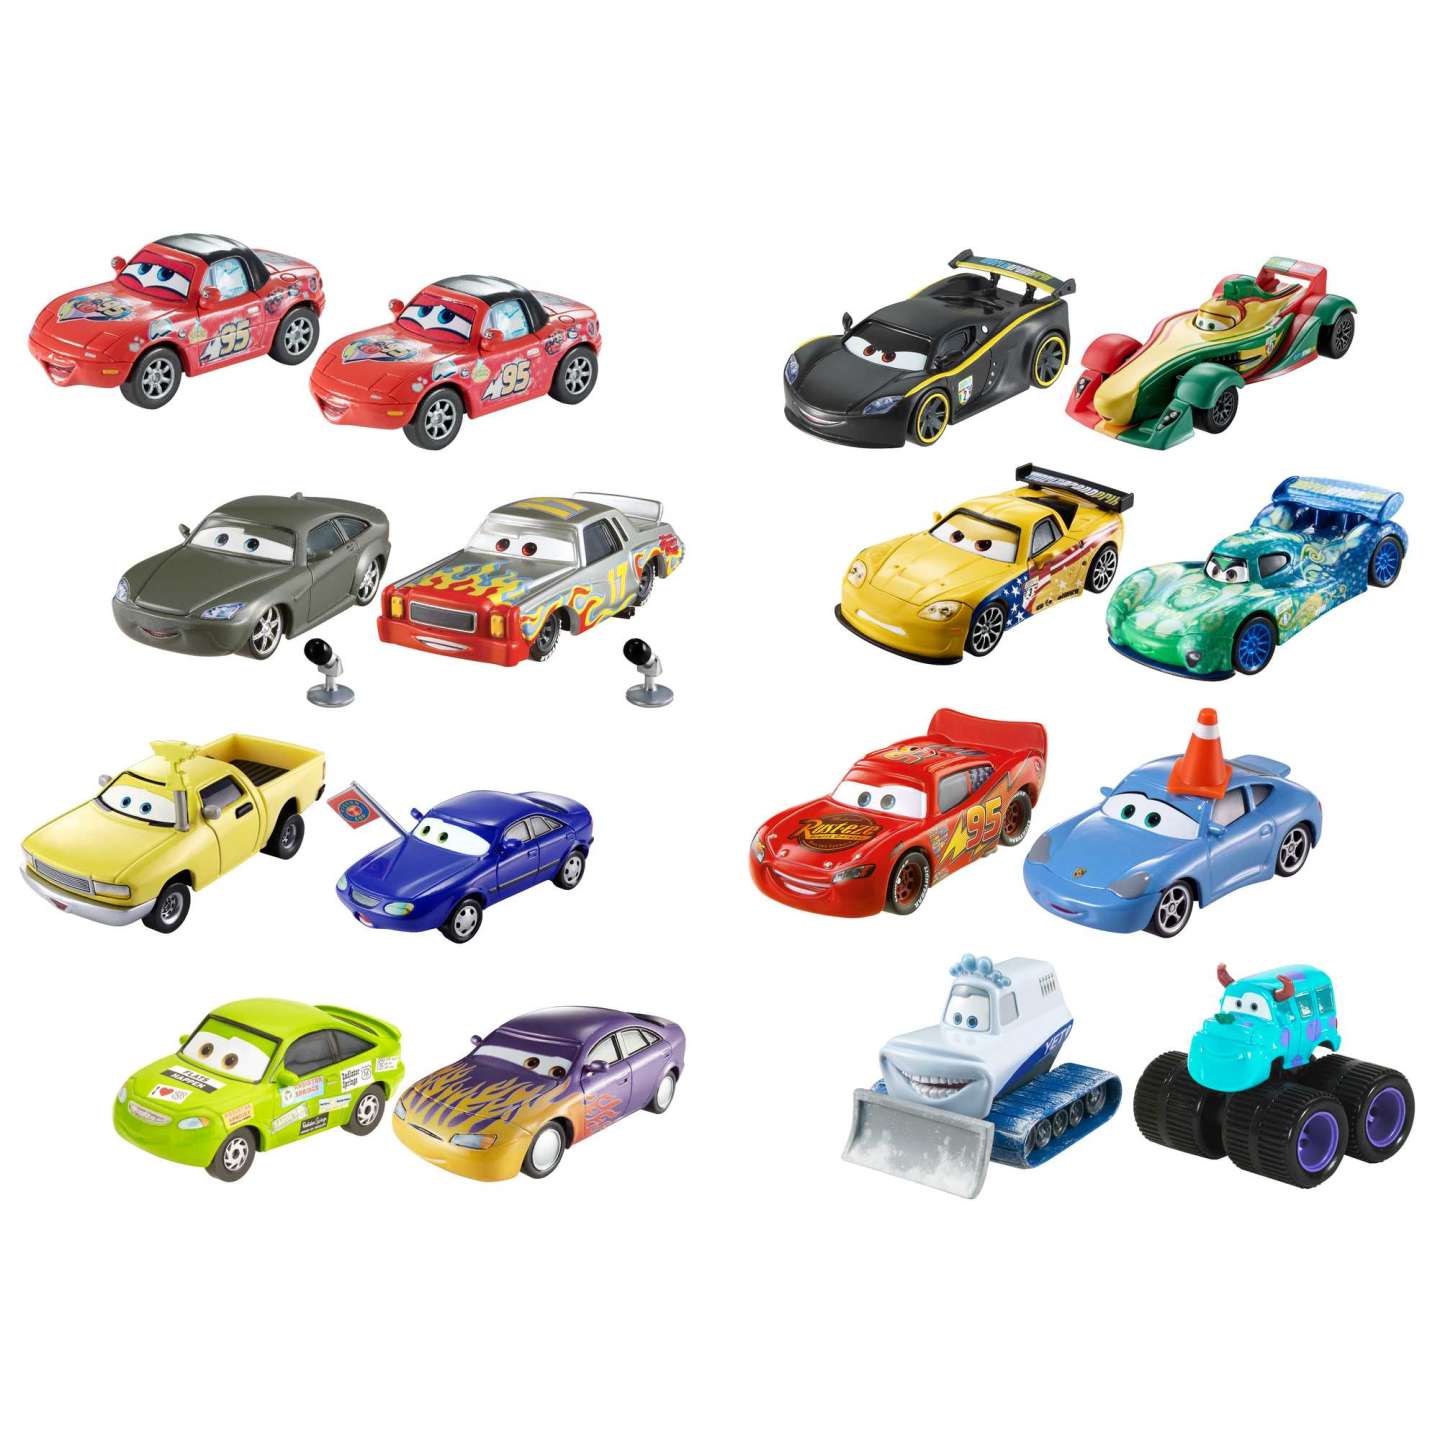 Disney Cars: Cars De Disney Y Pixar Paquete De 2 Personajes Aleatorio